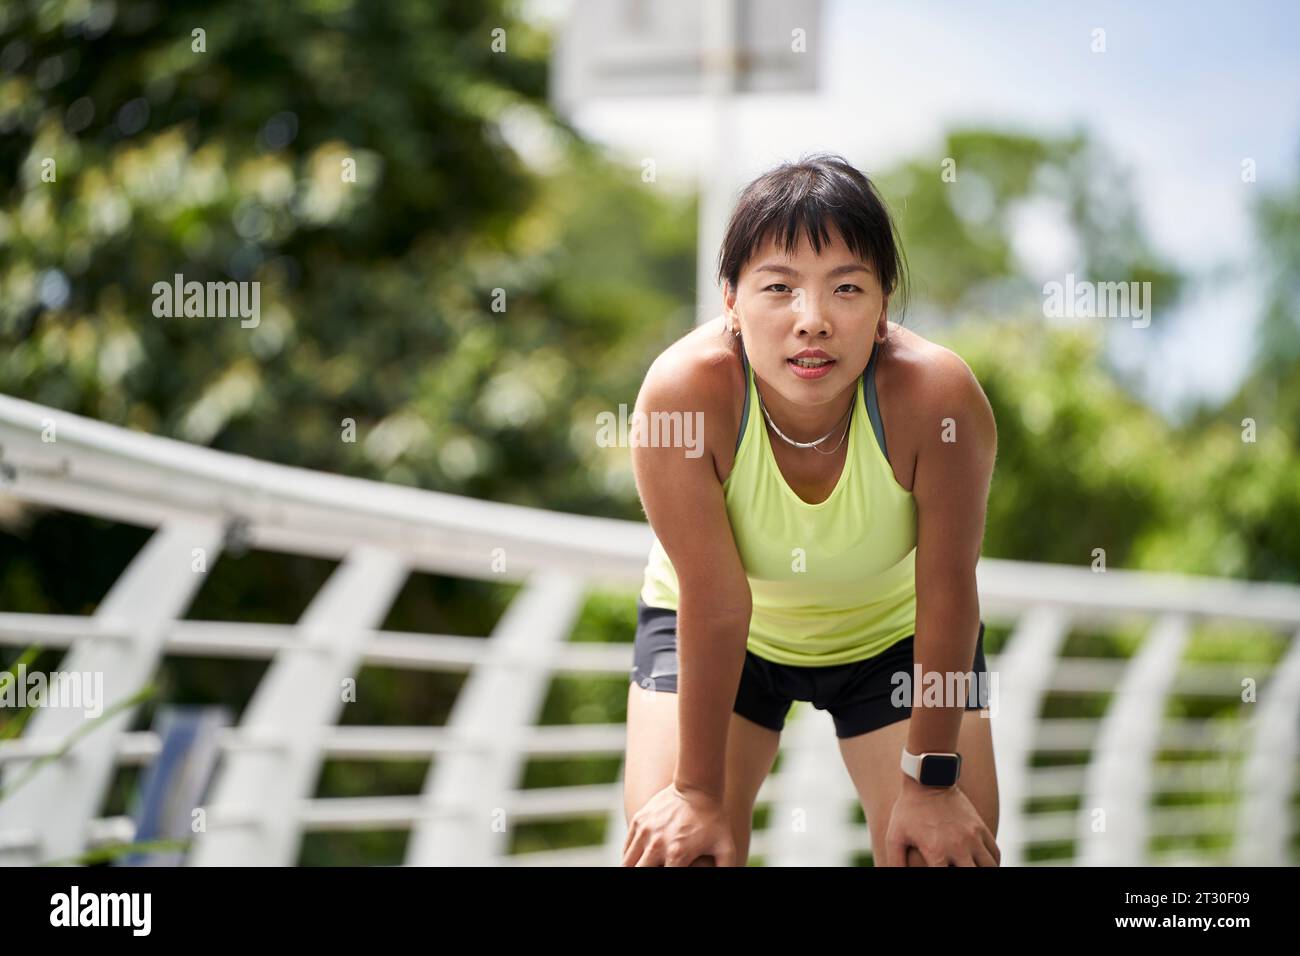 Junge asiatische Frau, weibliche Athletin, die im Freien trainiert Stockfoto